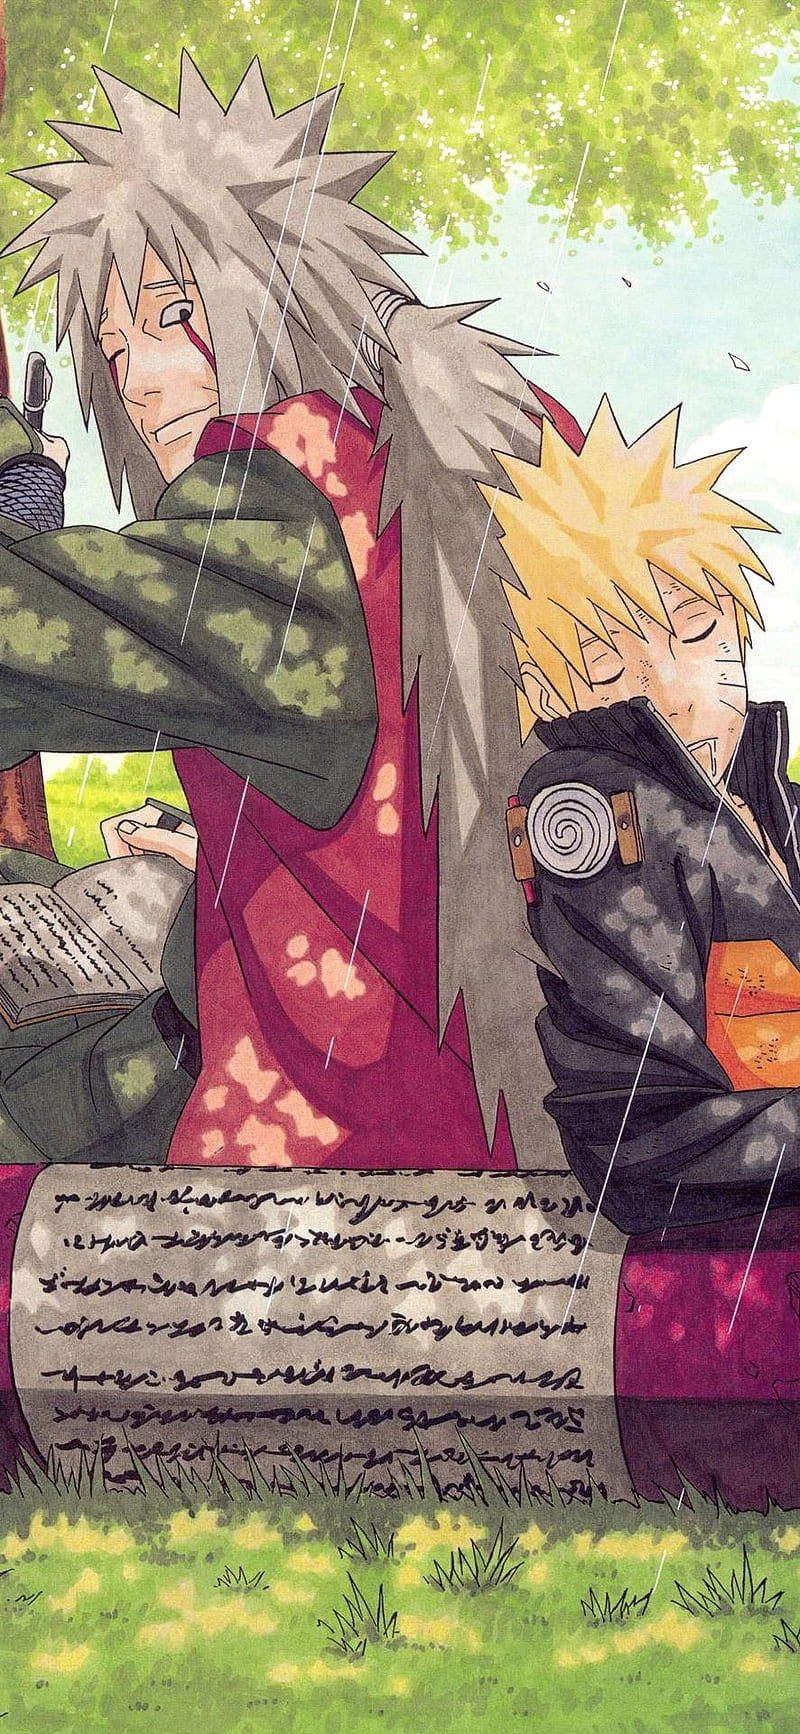 Chủ nhân của một trong những nhân vật nổi tiếng nhất trong Naruto, Jiraiya, sẽ thể hiện sự cứng cỏi và sự tinh tế của mình trên chiếc điện thoại của bạn. Tải ngay hình nền HD để thấy được sự mượt mà và sắc nét của các chi tiết trong bức tranh.